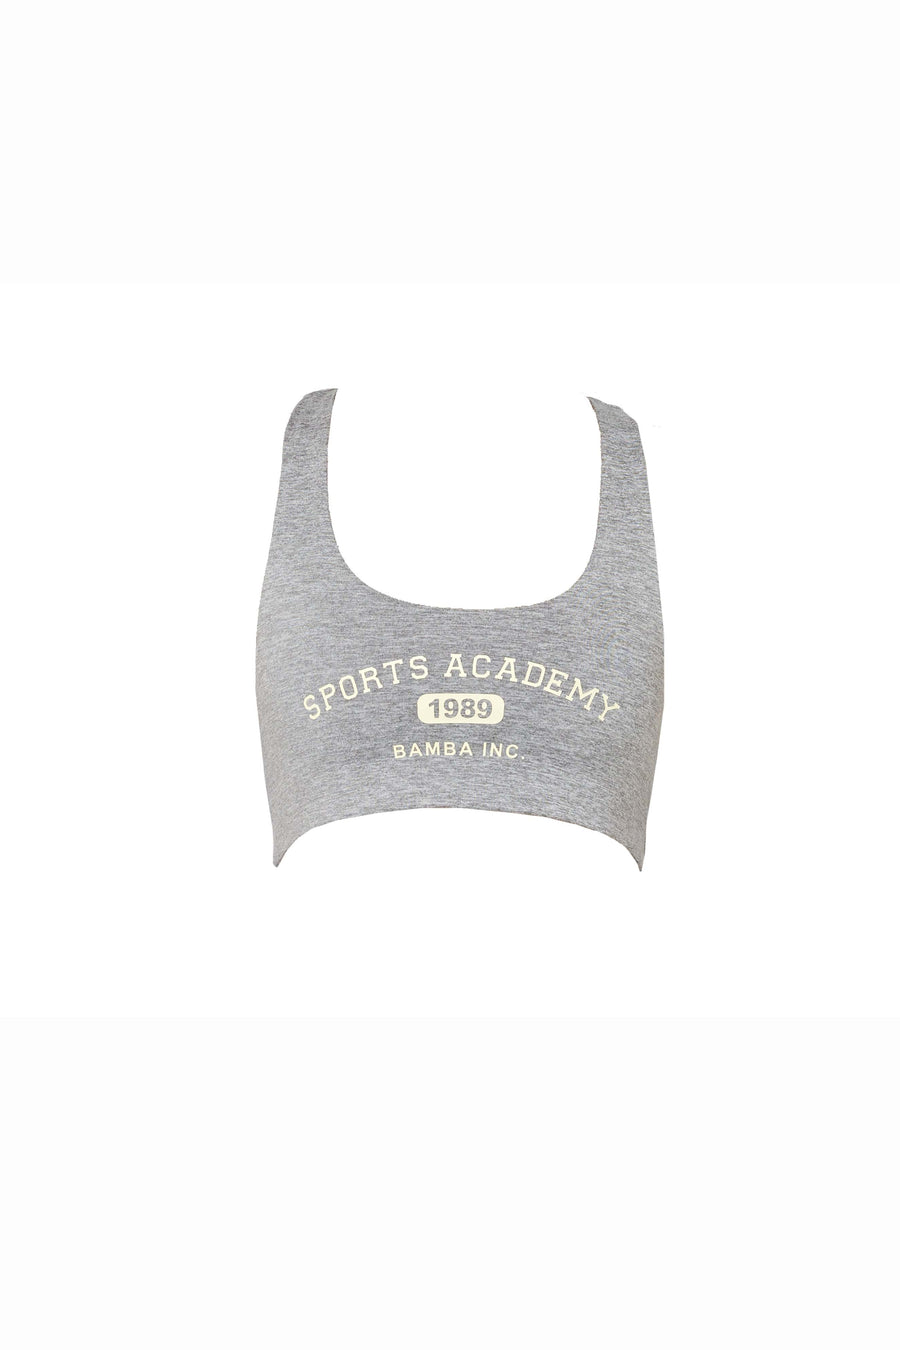 Sports Academy Bra - grey/ lemon  -  CLOTHING  -  B Ā M B A S W I M